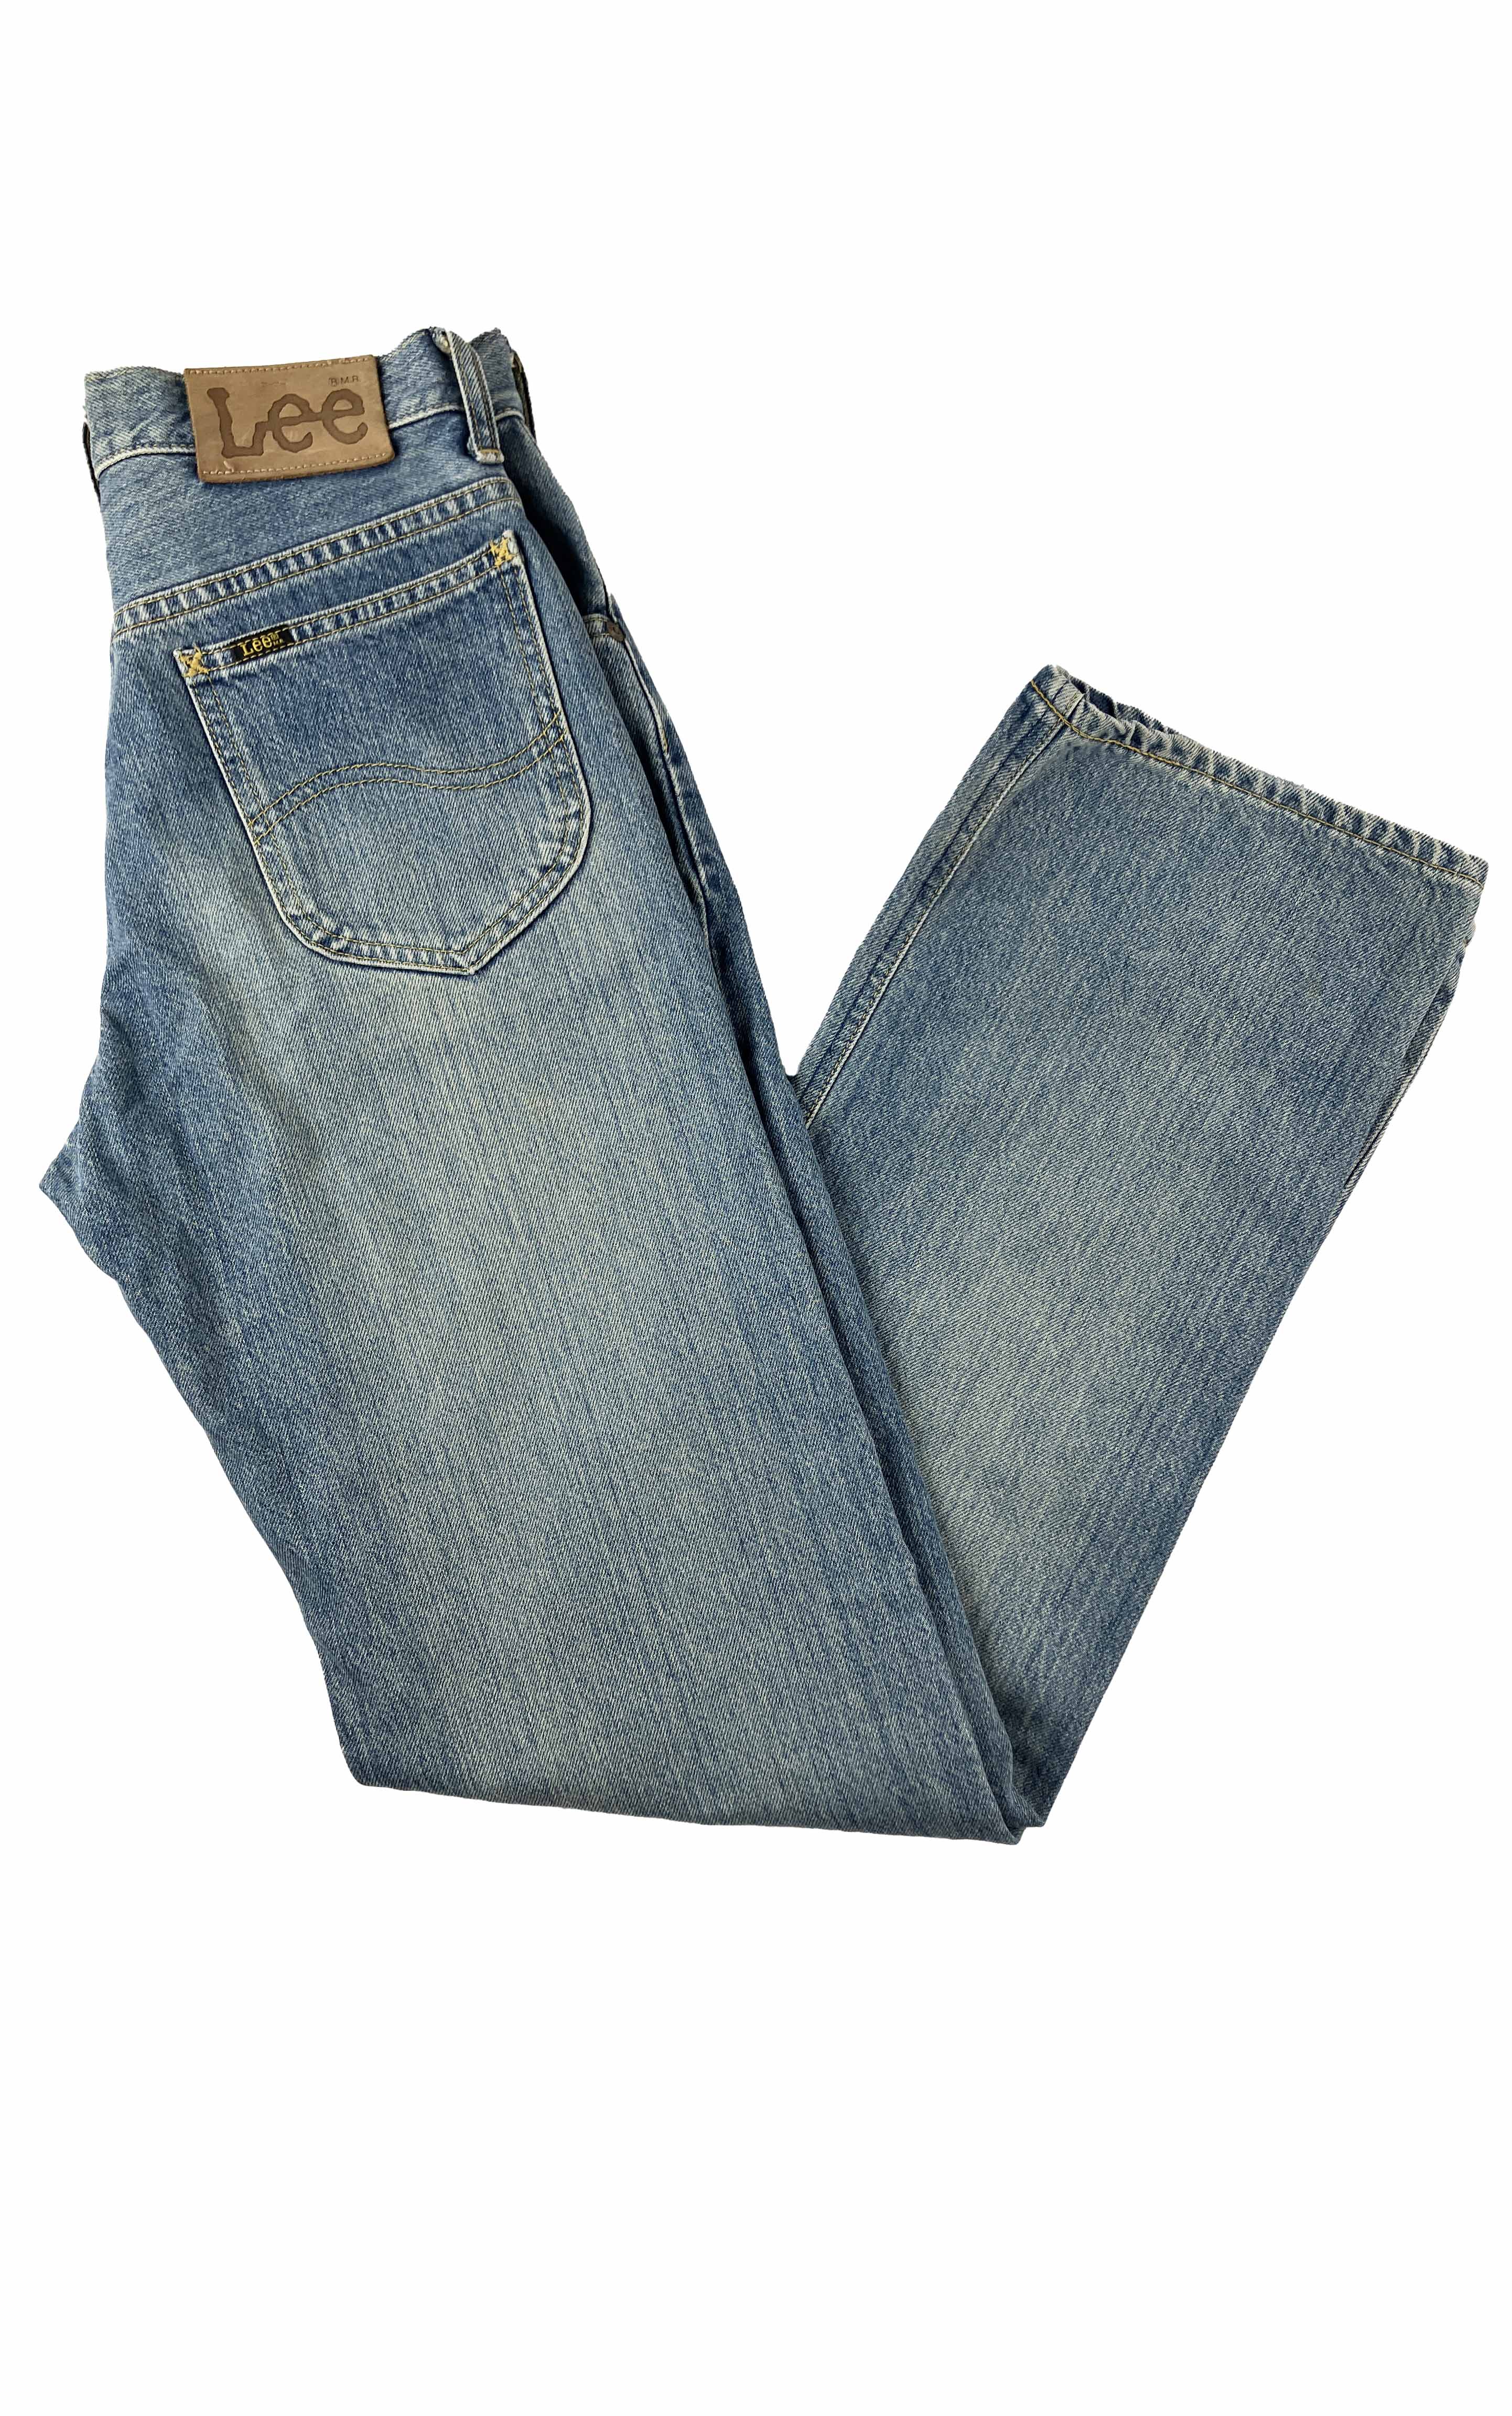 Vintage Lee Light Wash Denim Jeans - Size 10 Reg – Lifetime Of Leisure